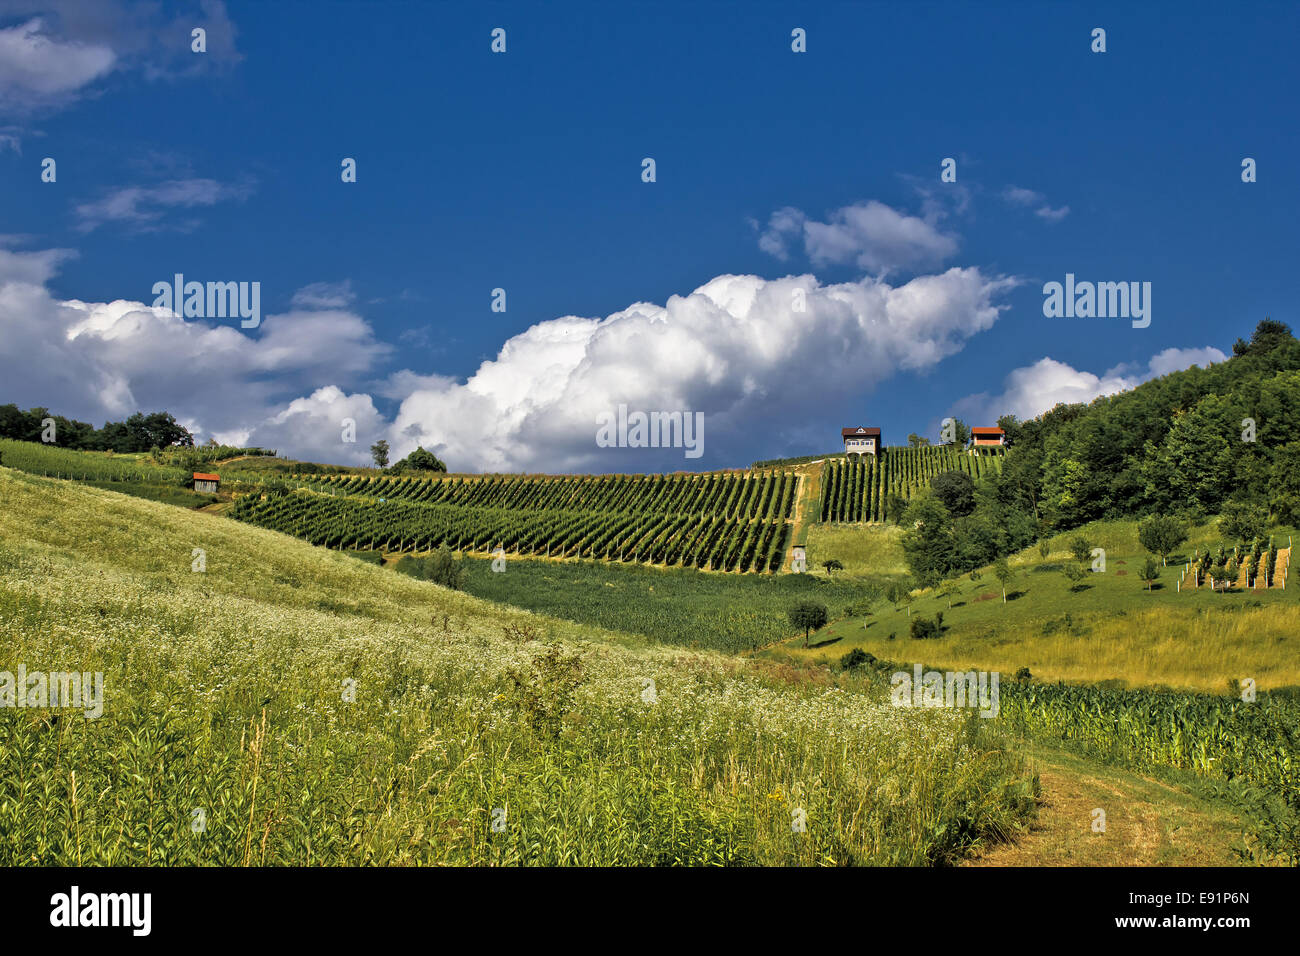 Vert printemps colline idyllique avec vineyard Banque D'Images